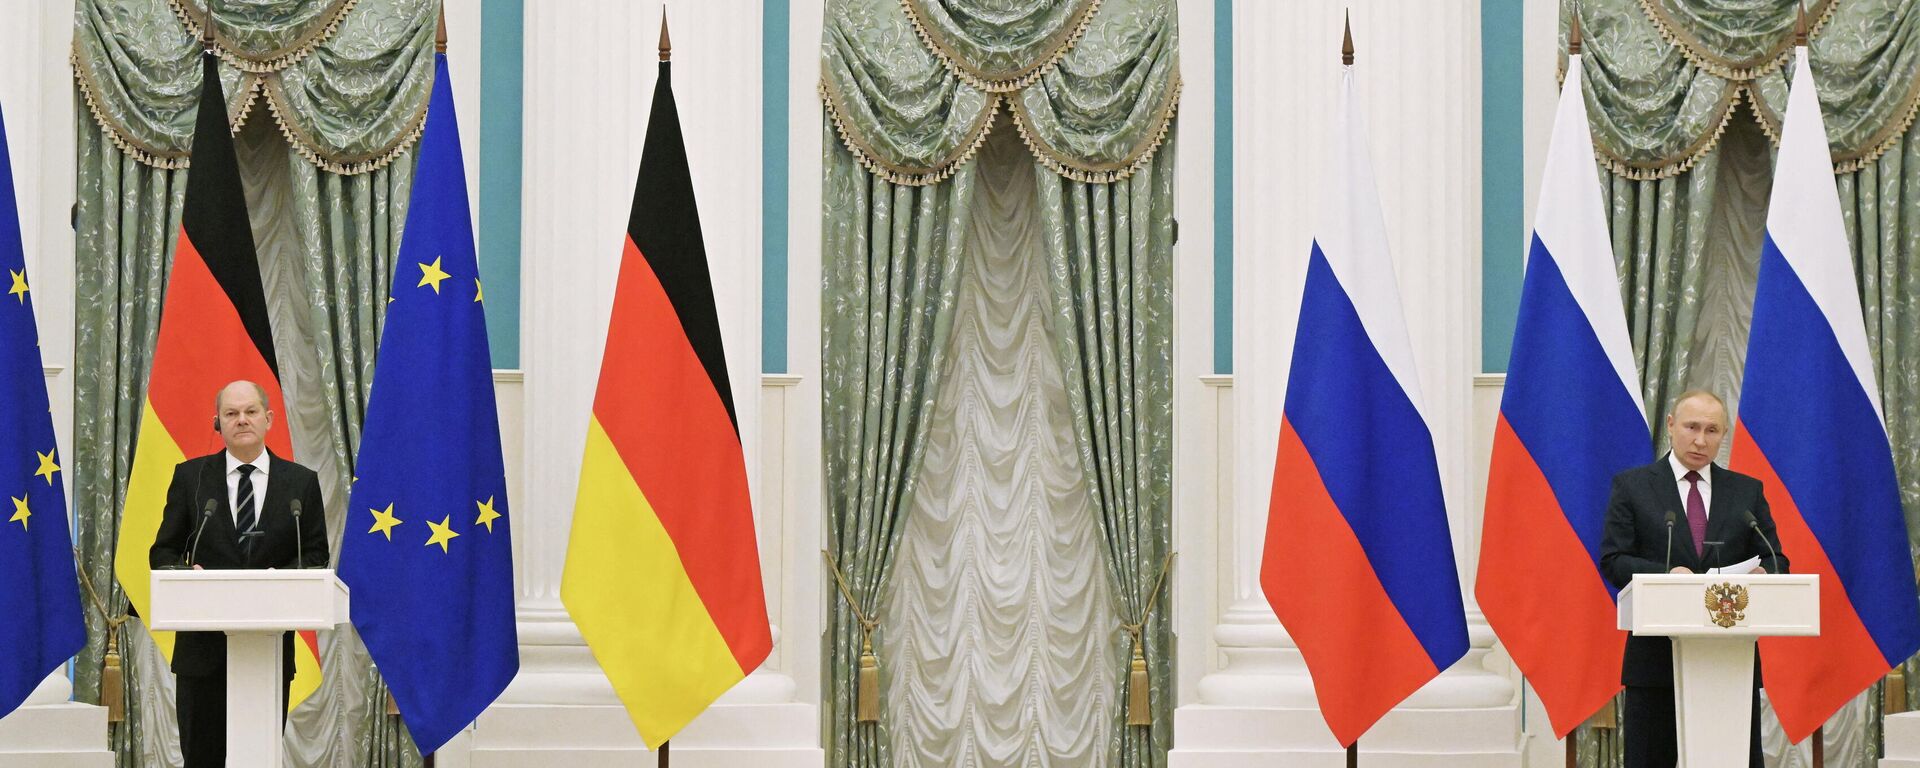 Vladimir Putin, presidente russo, e Olaf Scholz, chanceler da Alemanha, durante coletiva de imprensa em Moscou, Rússia, 15 de fevereiro de 2022 - Sputnik Brasil, 1920, 15.02.2022